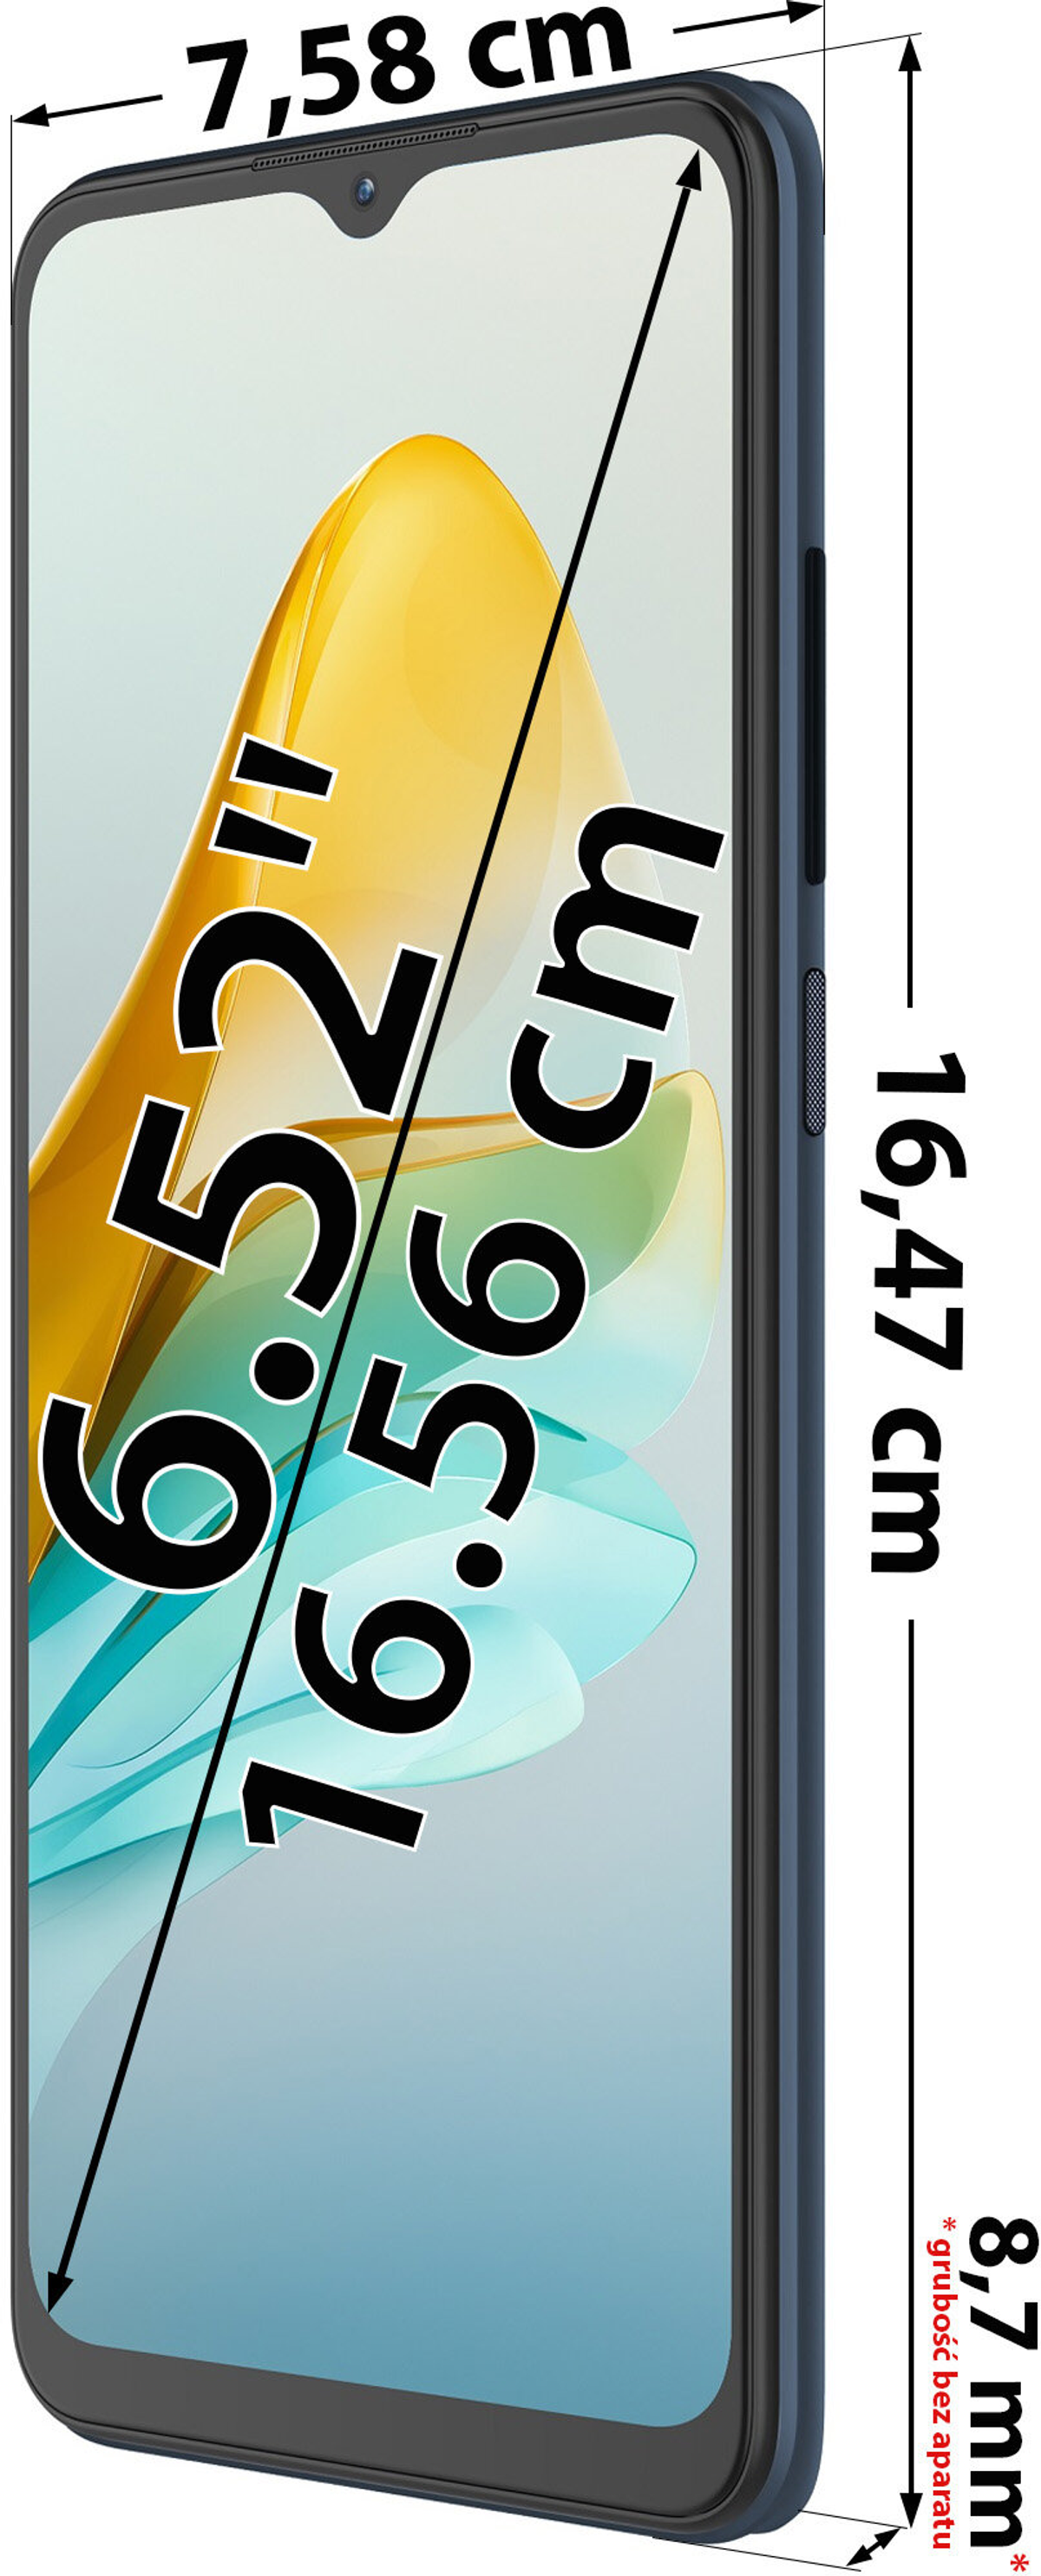 ZTE Dual Blau GB Blade 64 A53 SIM Pro